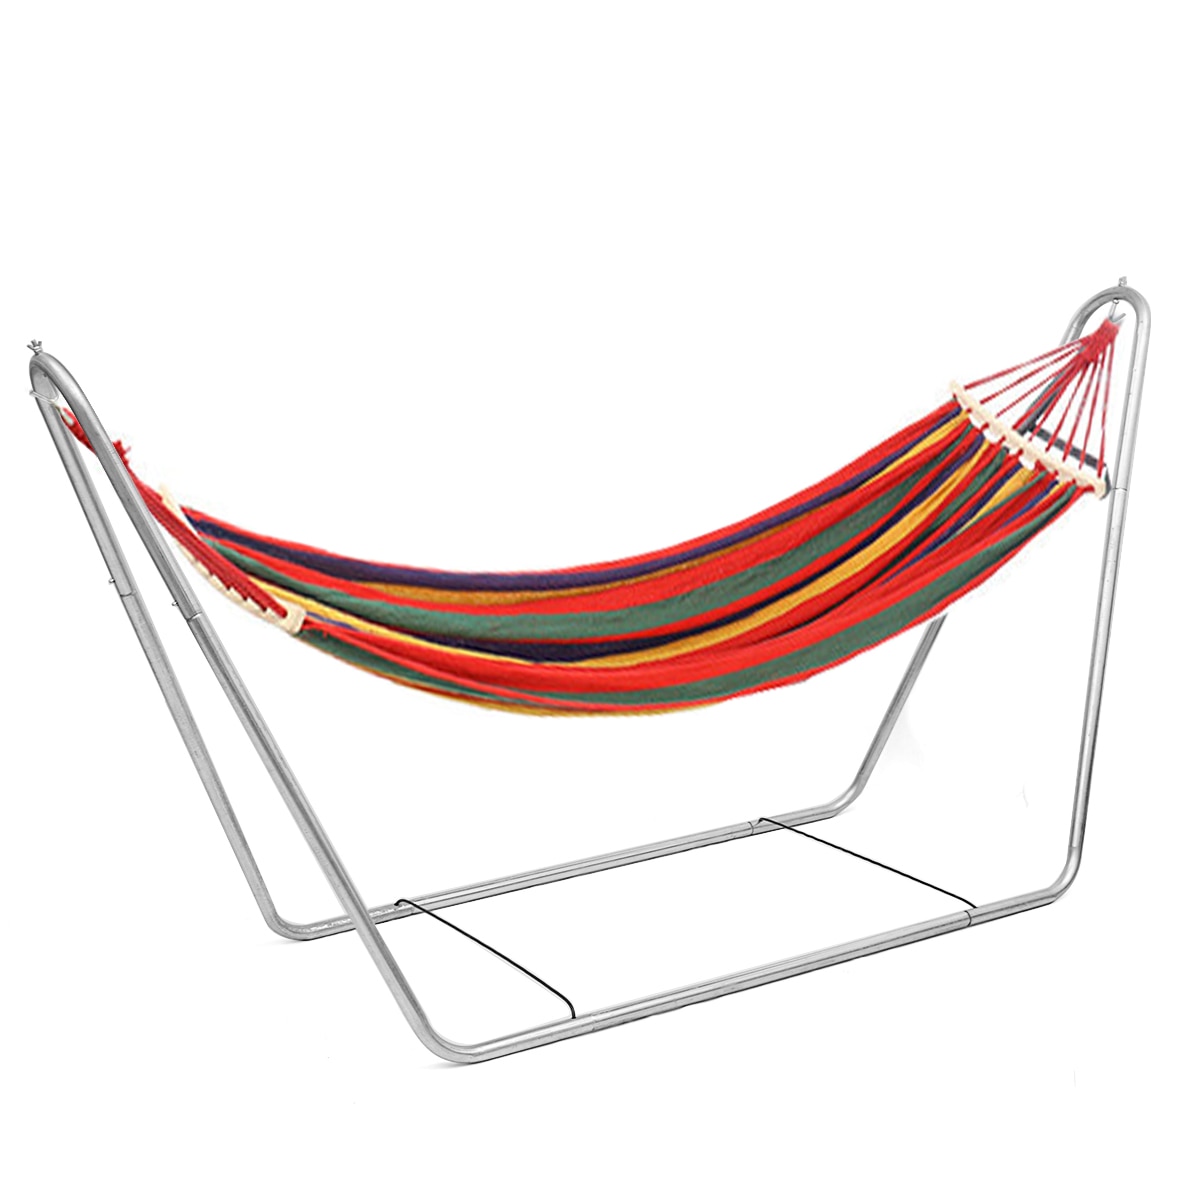 Twee-Persoon Hangmat Camping Thicken Swingende Stoel Outdoor Opknoping Bed Canvas Schommelstoel Met Hangmat Stand 200*150Cm